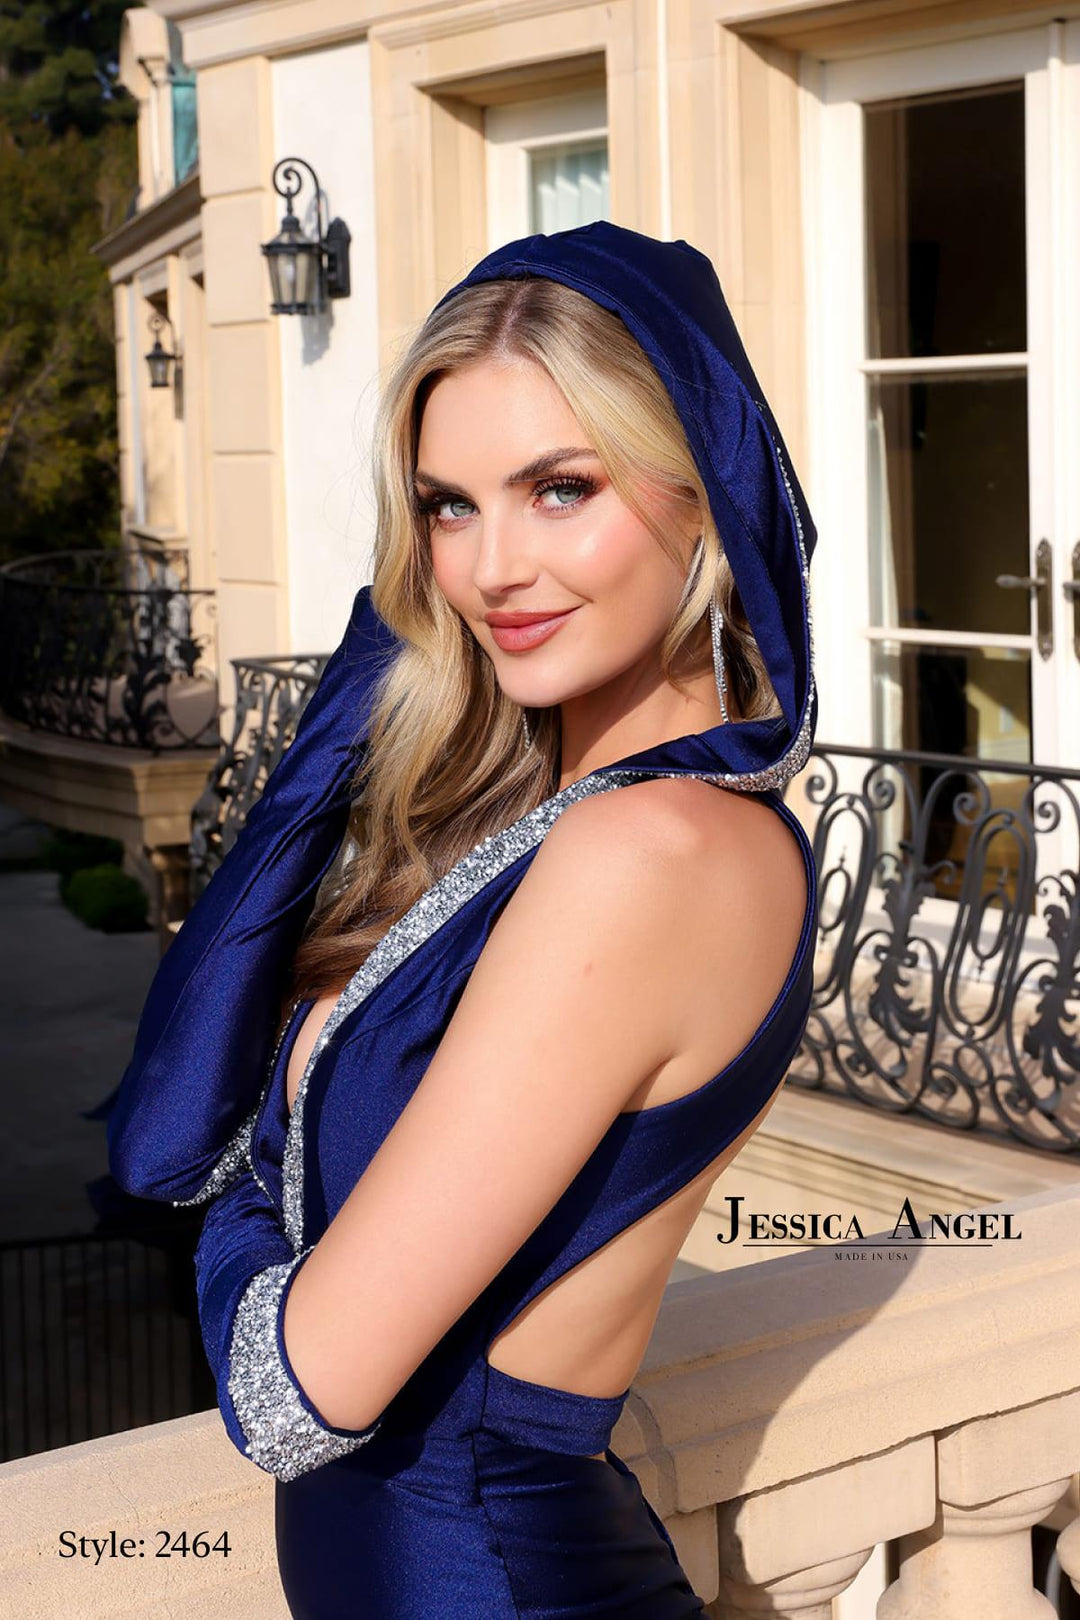 JESSICA ANGEL JA2464 DRESS - FOSTANI